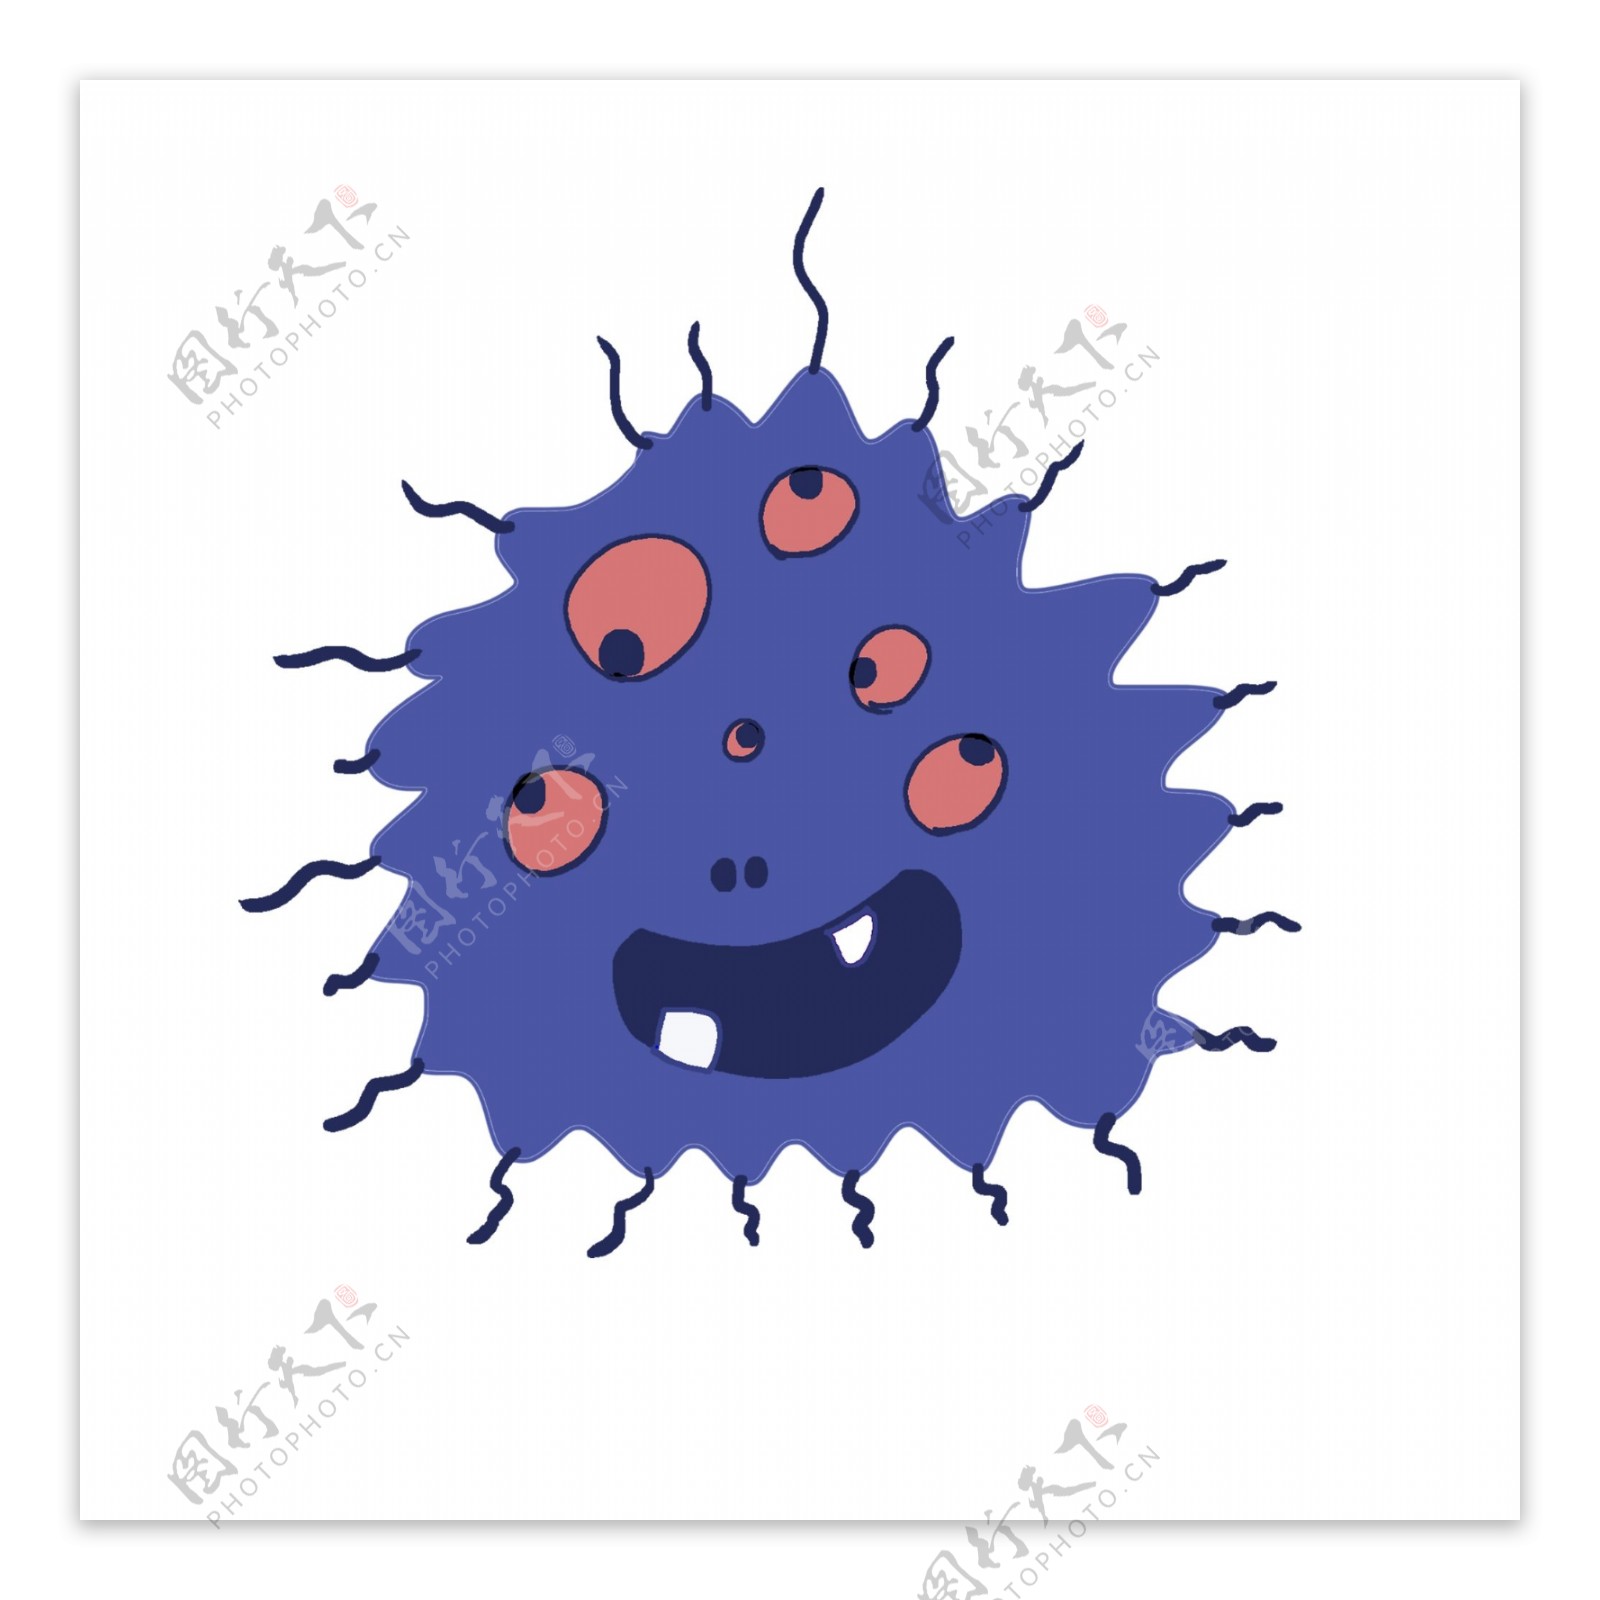 蓝色的有害细菌插画